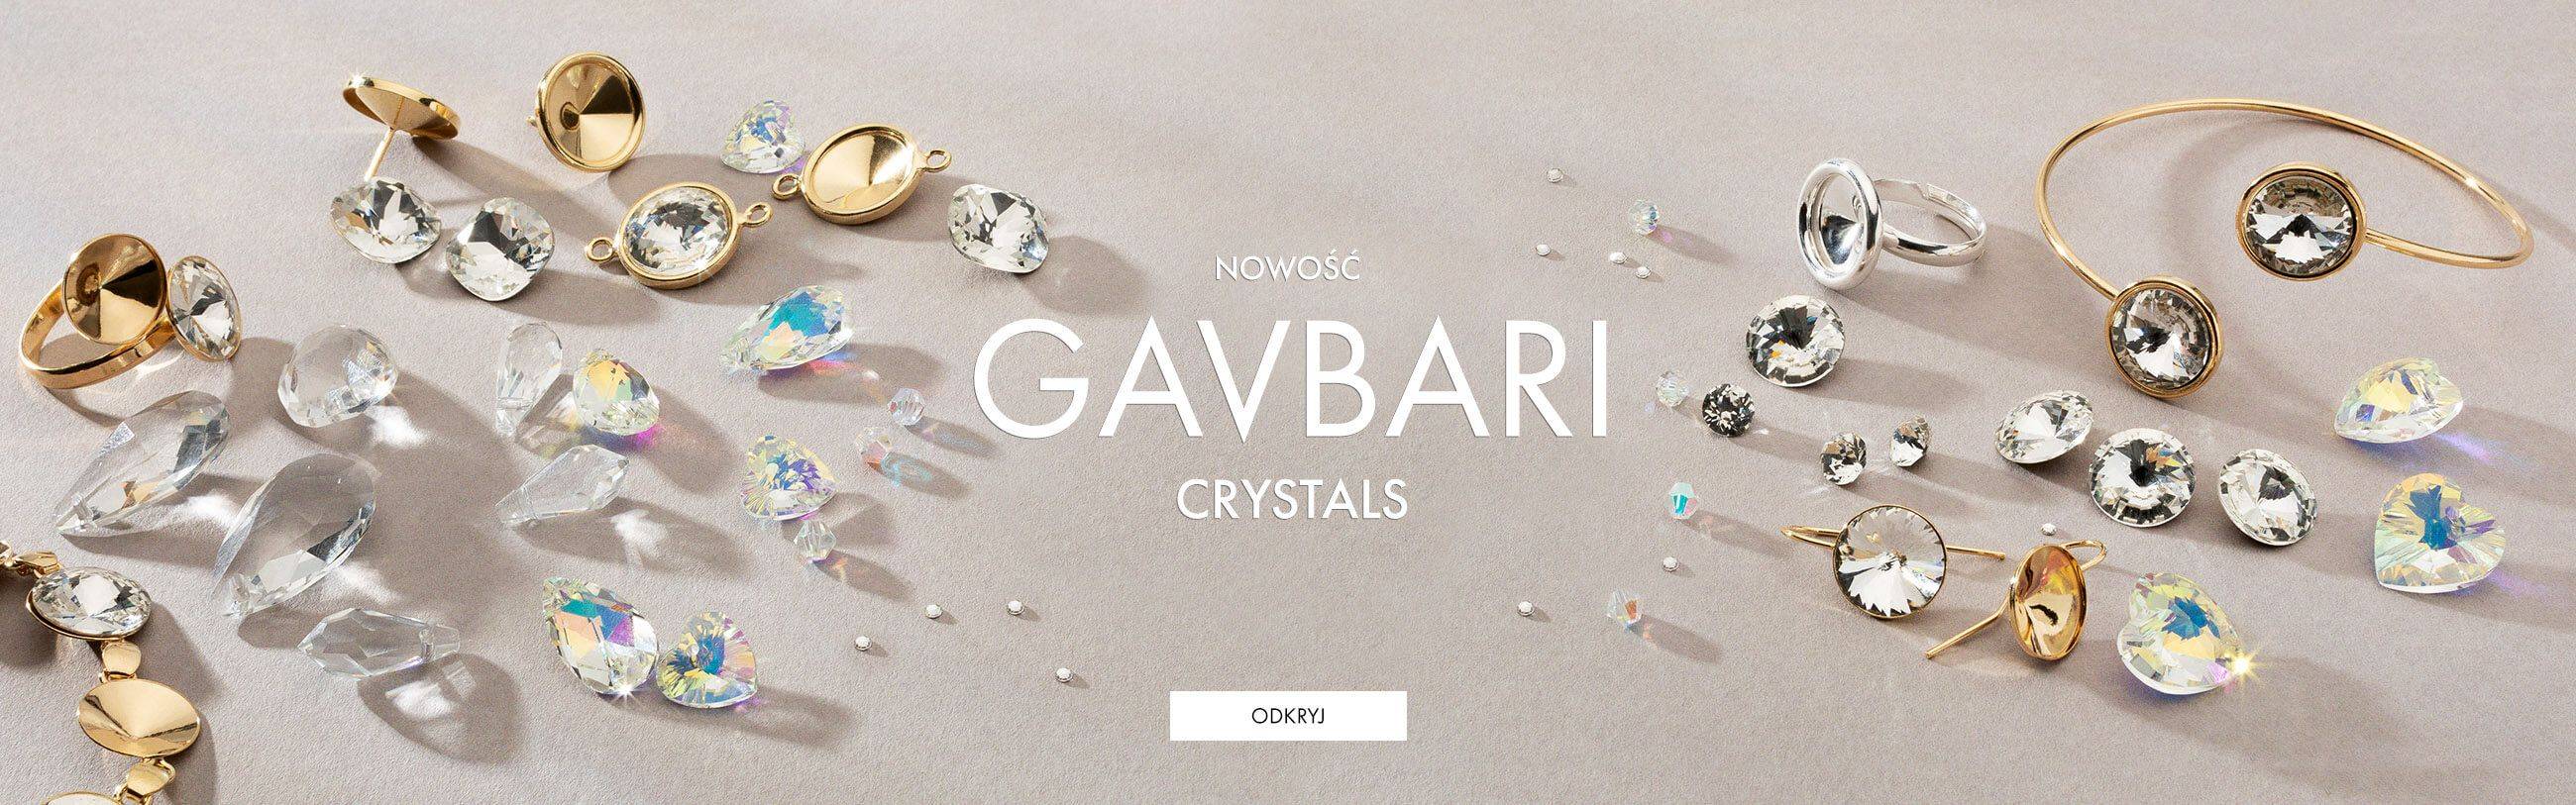 Kryształy GAVBARI